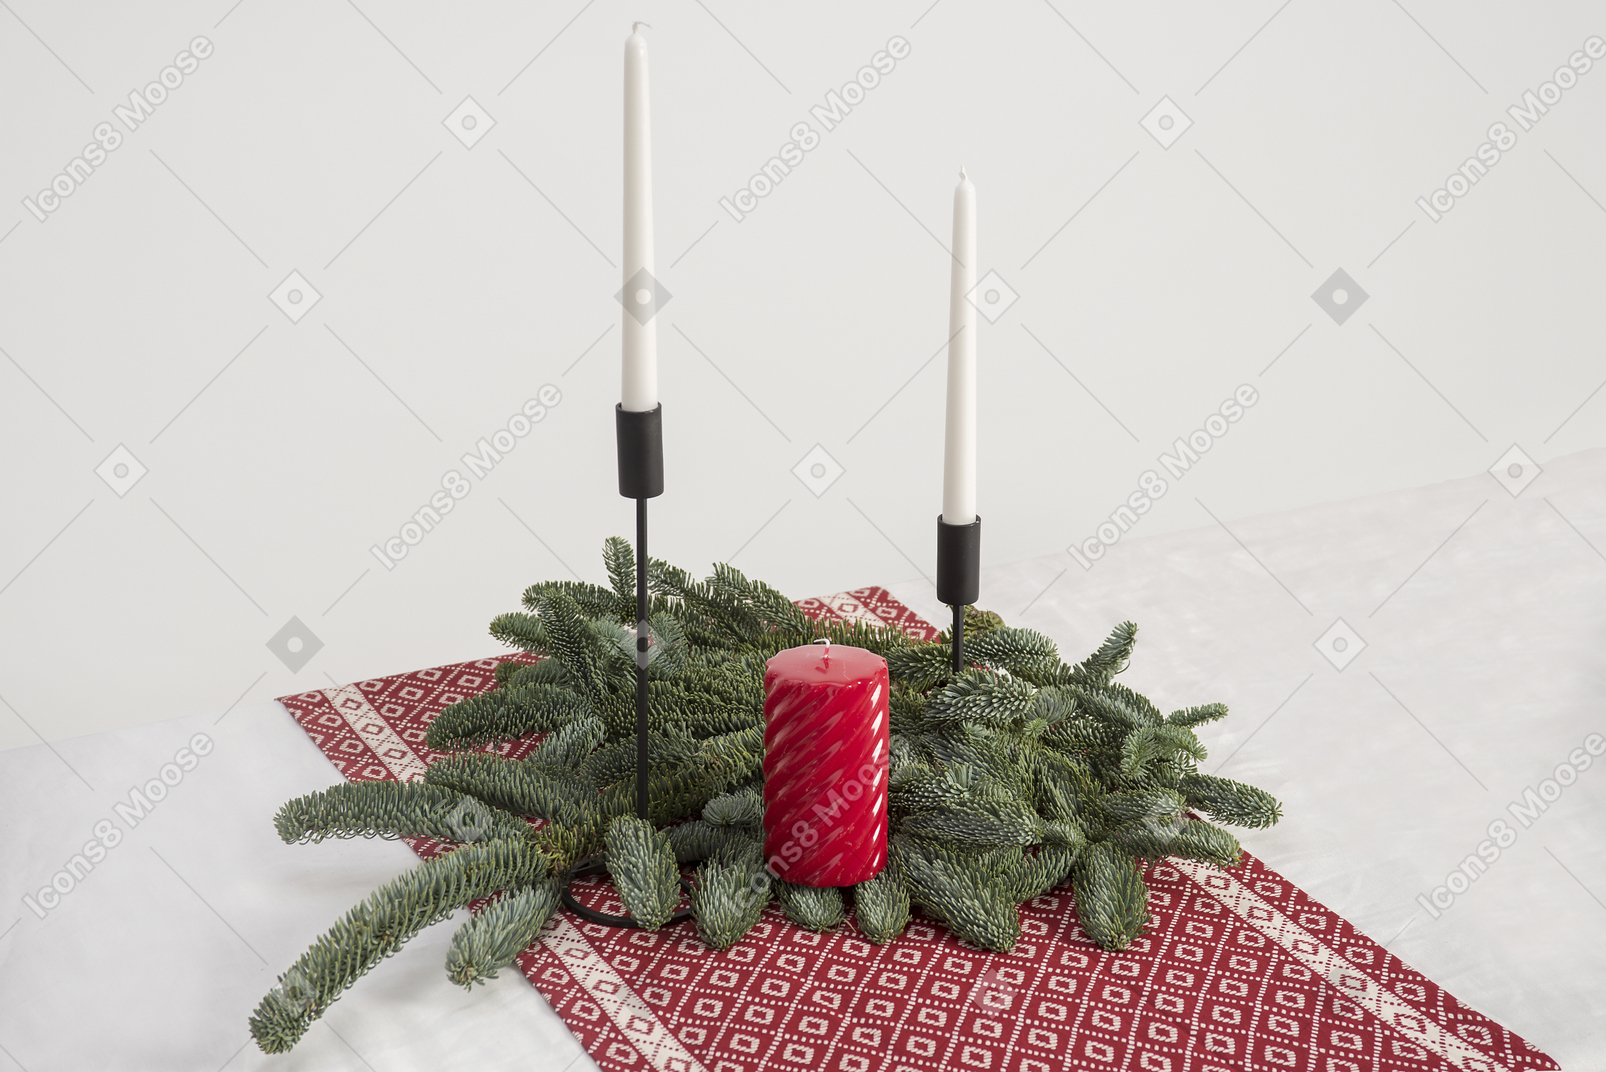 Große kerze und zwei kerzen in leuchter und zweig der weihnachtsbaum